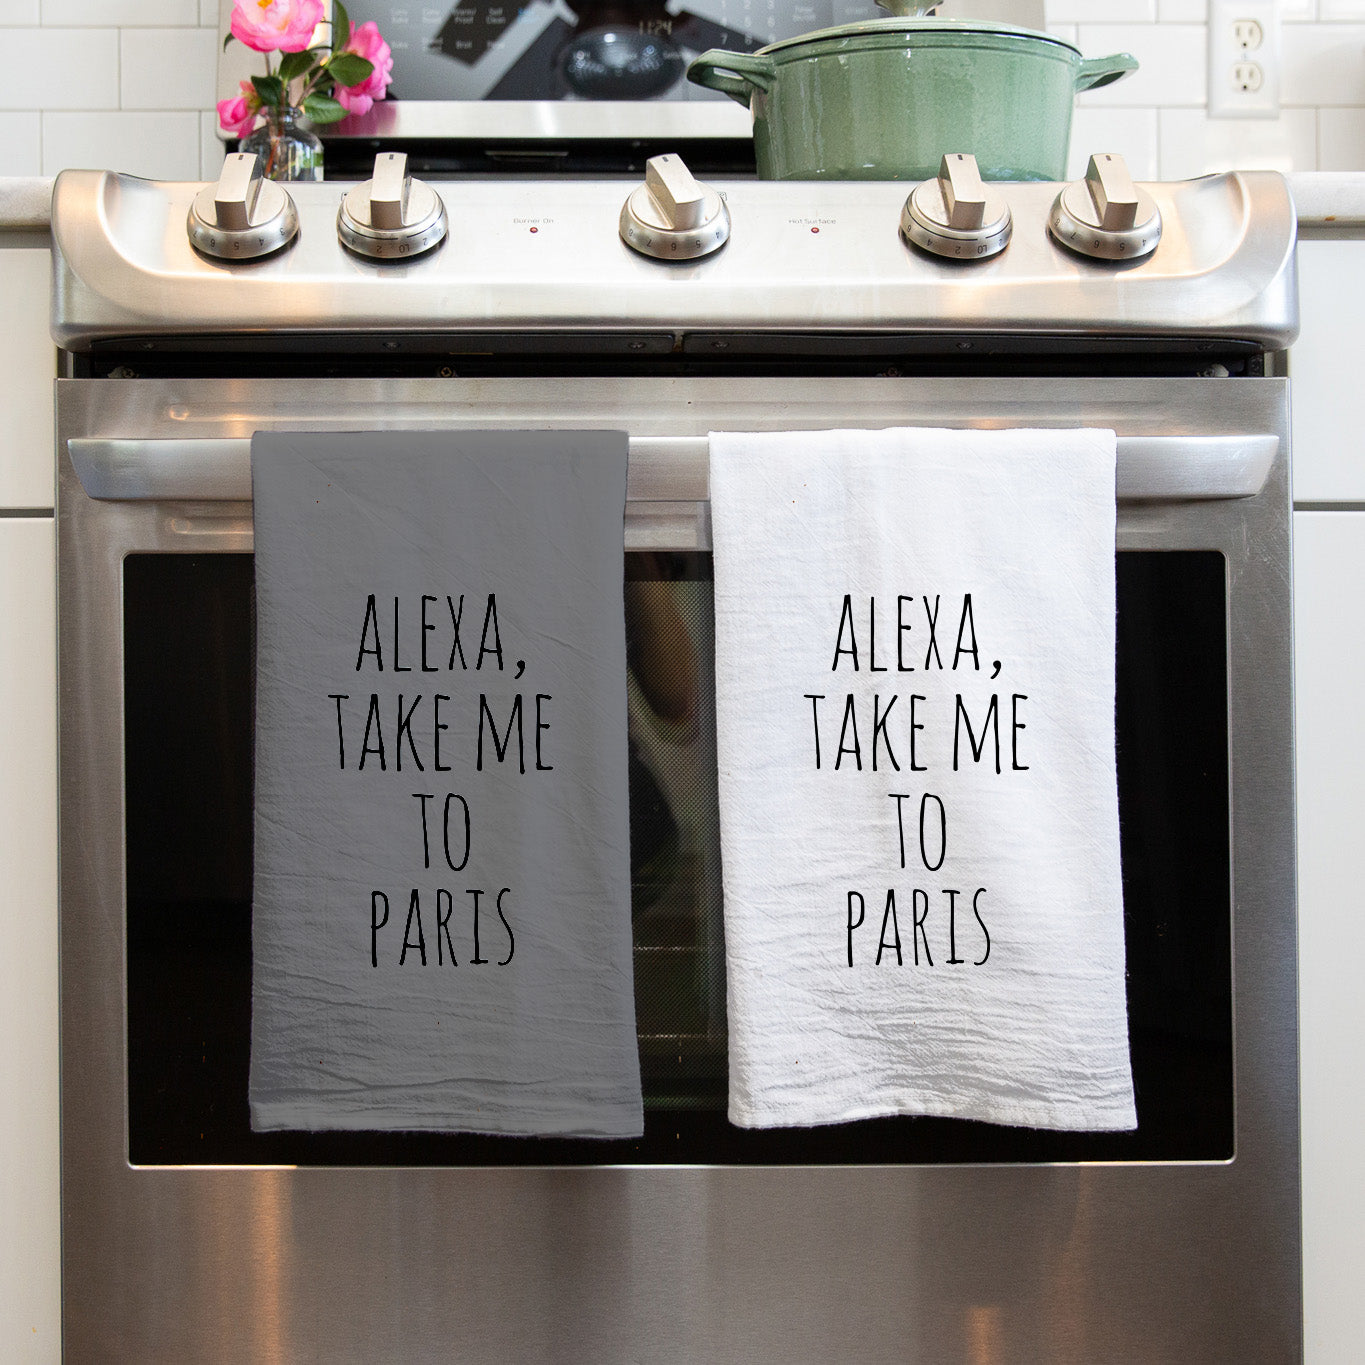 Alexa take me to Paris tea towel on nice kitchen stove. Both white and gray. 